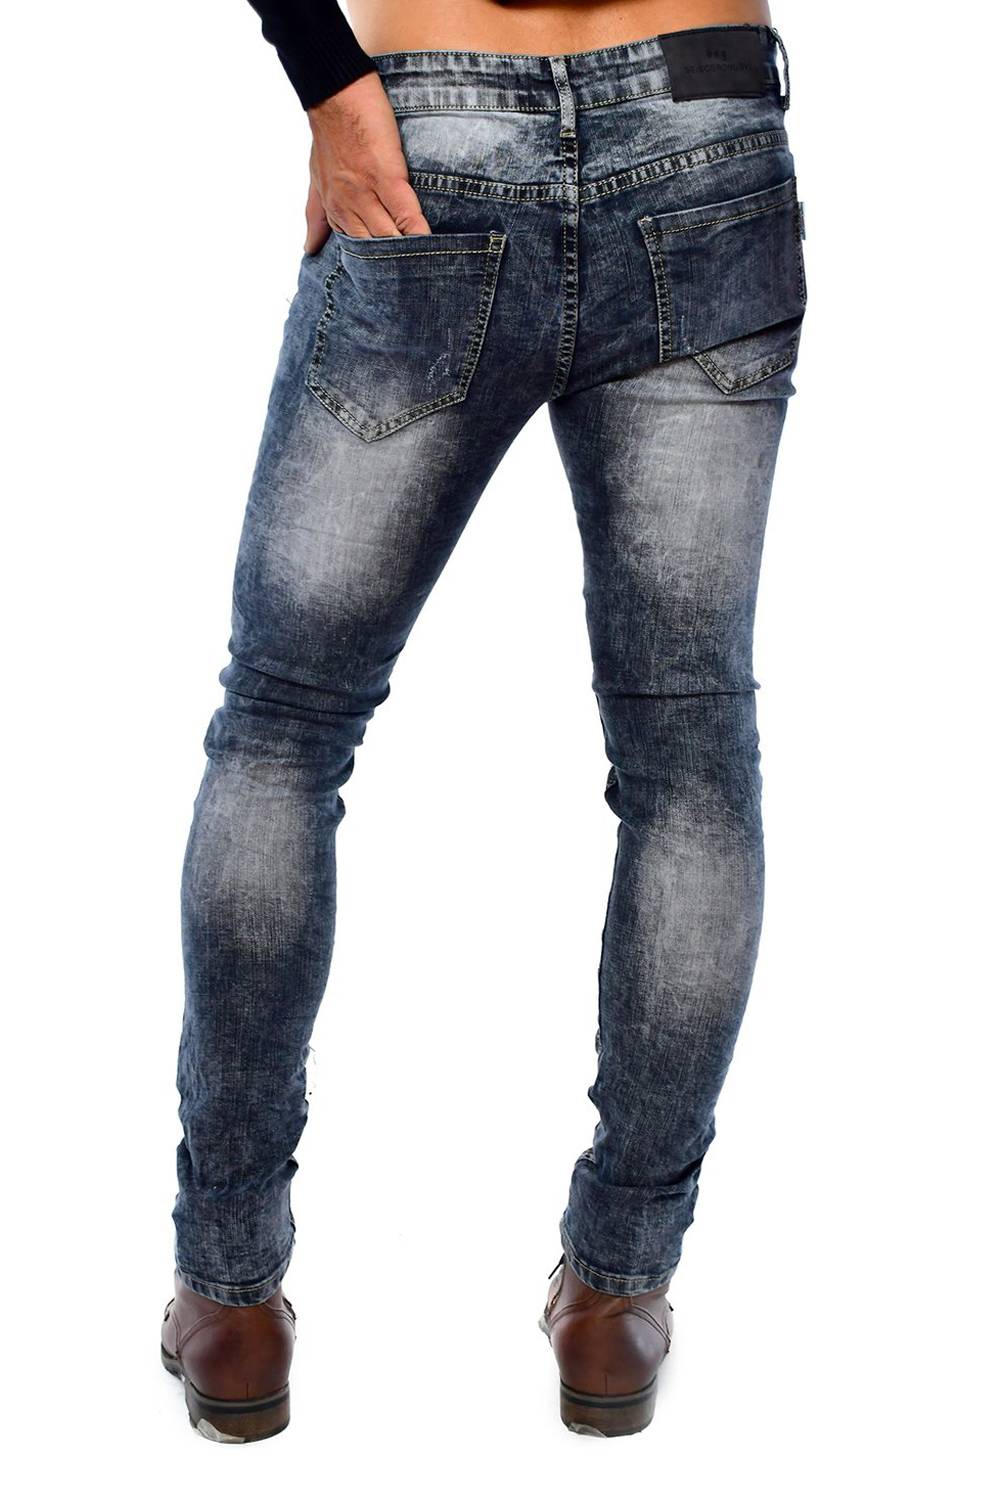 SEISCERONUEVE - Pantalón Jeans Skinny Fashion